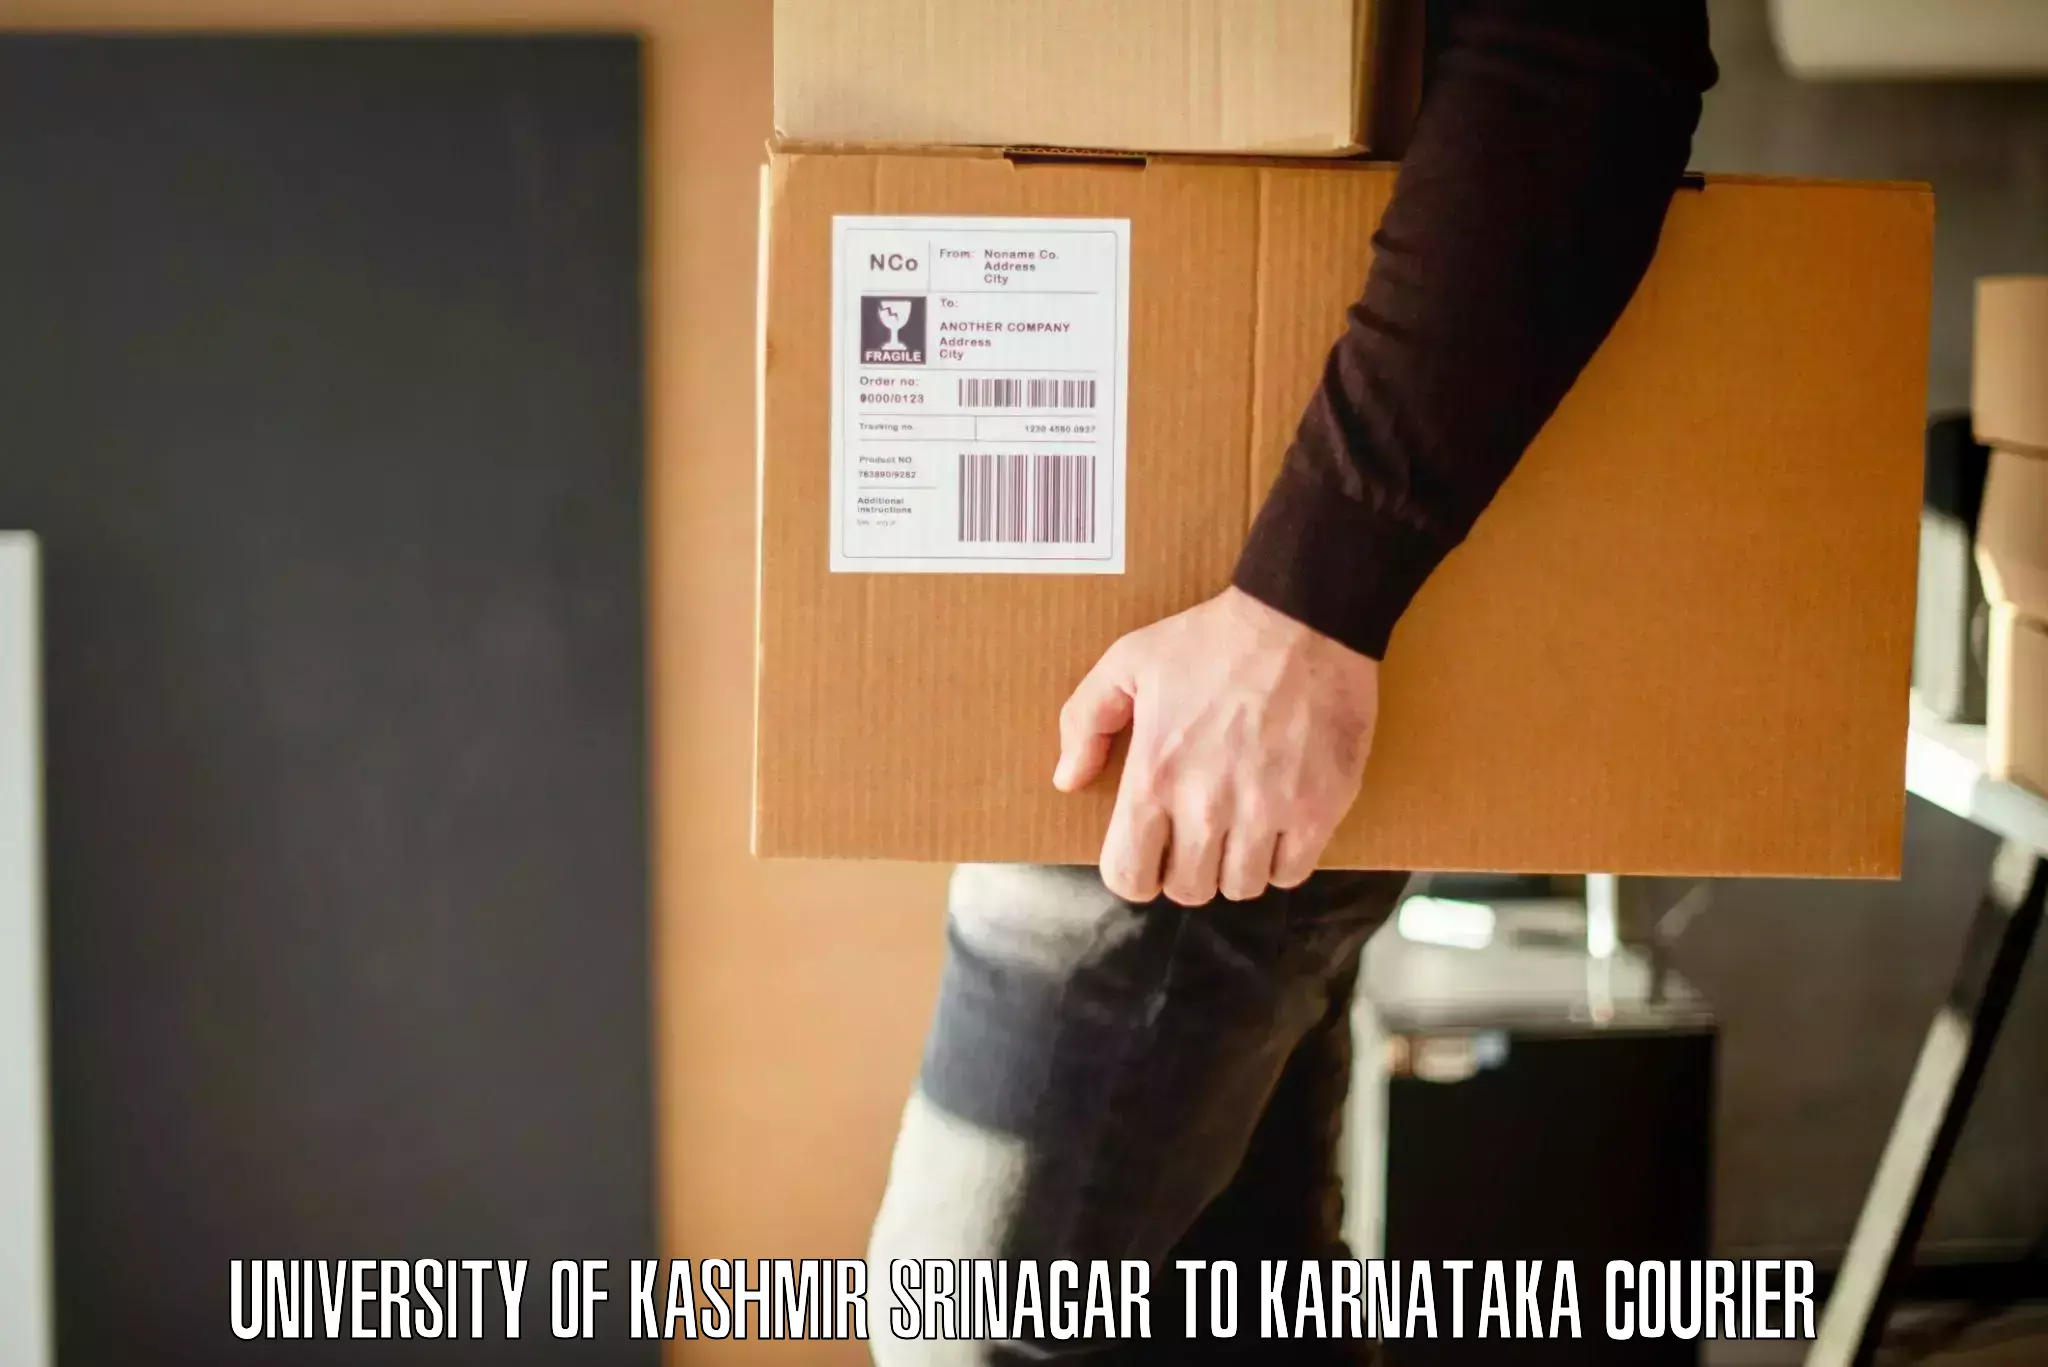 Furniture transport service University of Kashmir Srinagar to Humnabad